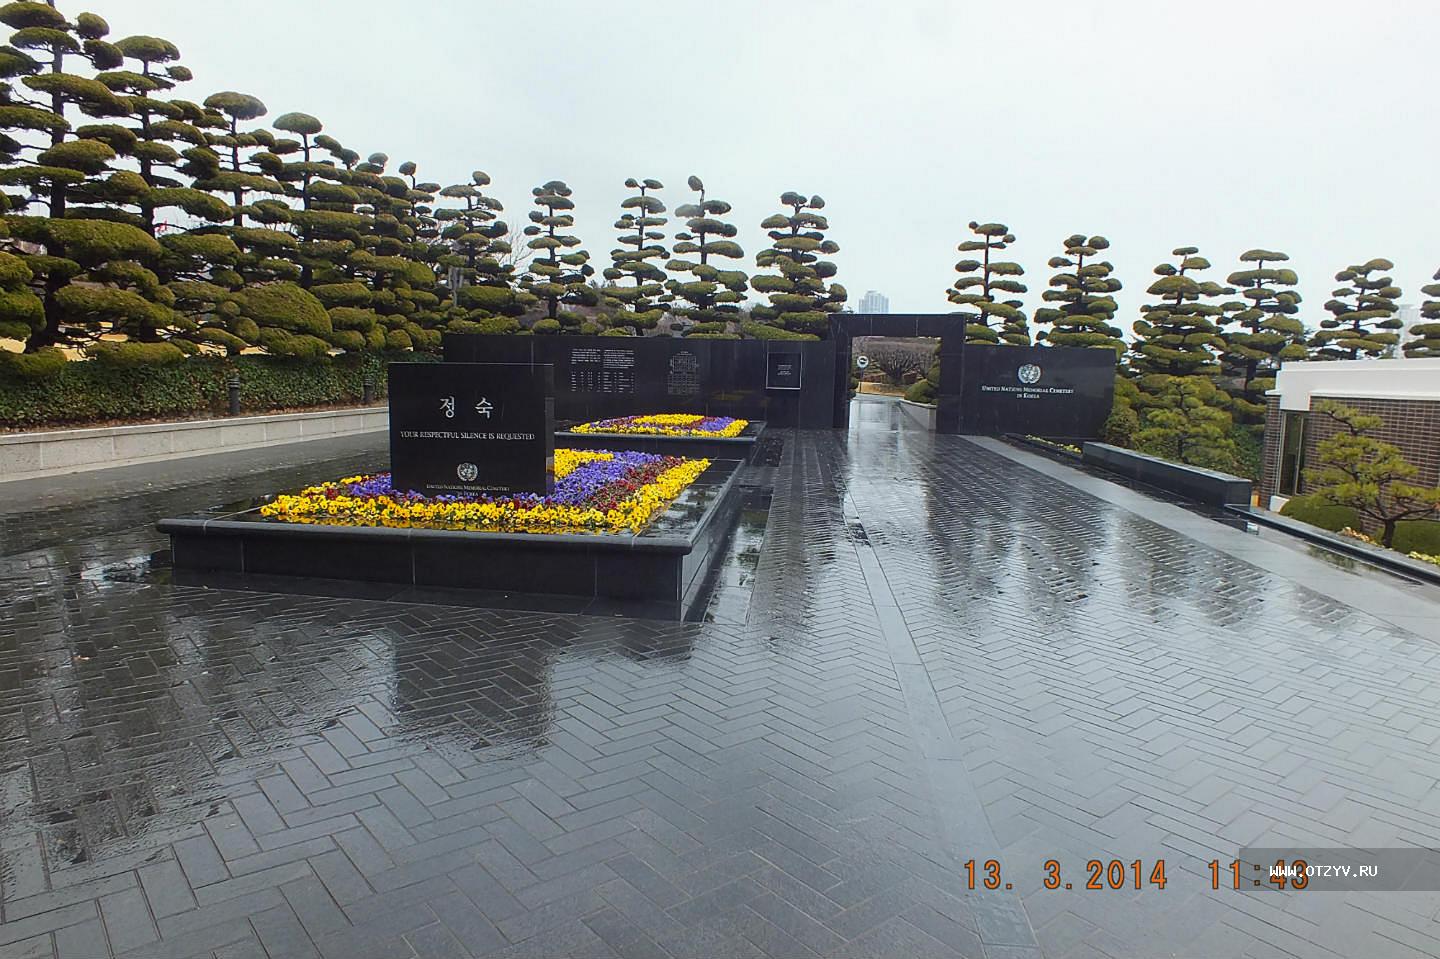 Как выглядят корейские кладбища. Мемориальное кладбище ООН В Пусане. Мемориальное кладбище Южная Корея. Кладбища Южной Кореи знаменитые. Кладбище юдно в Южной Корее.